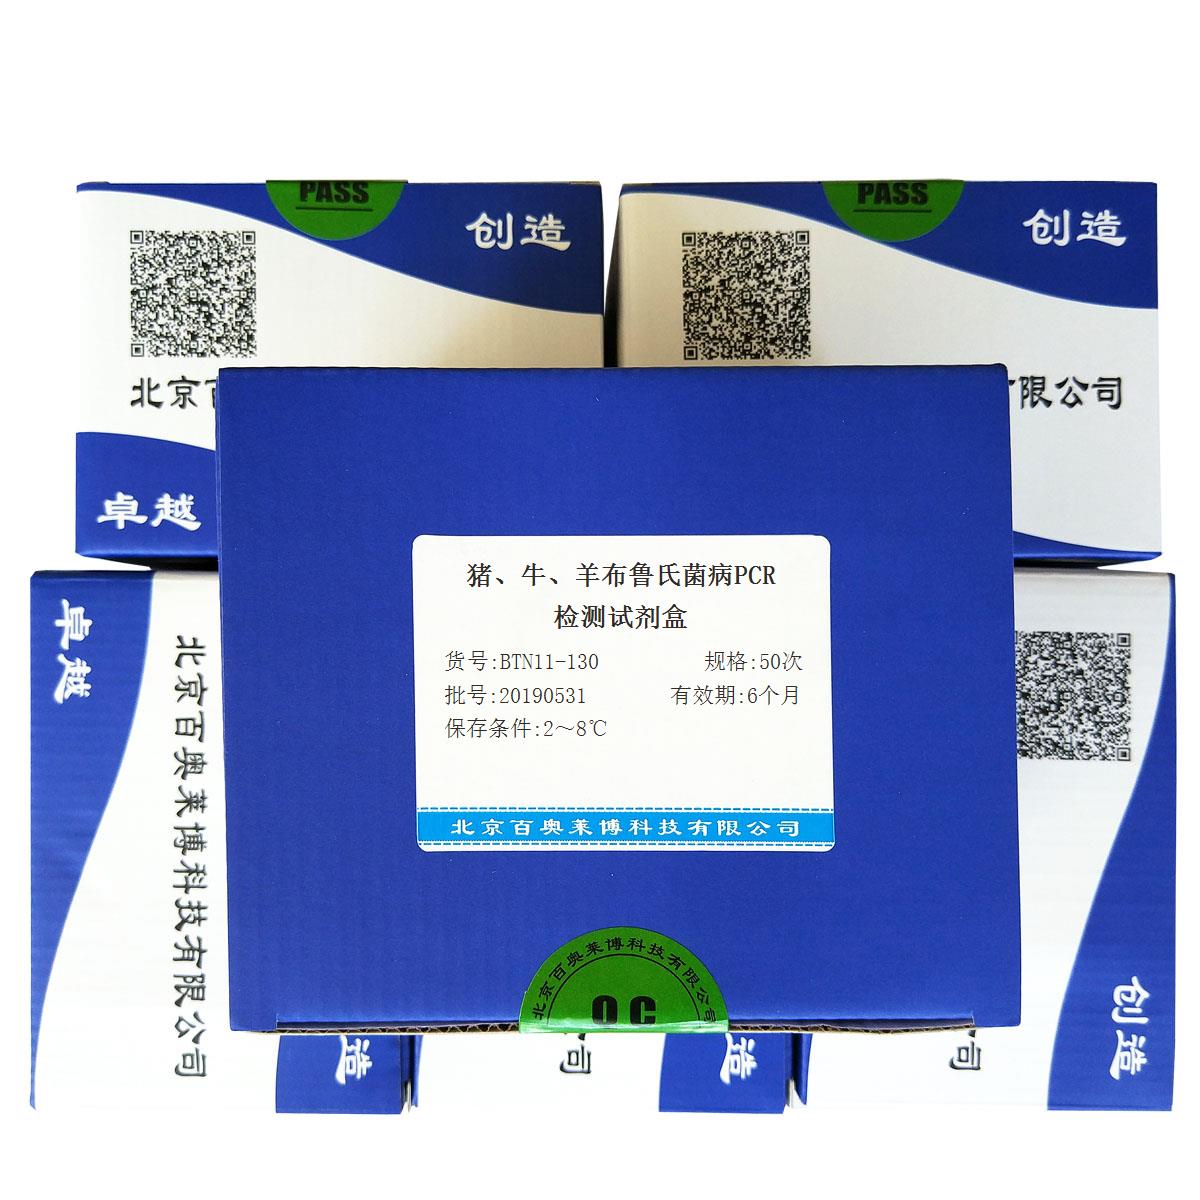 猪、牛、羊布鲁氏菌病PCR检测试剂盒北京现货